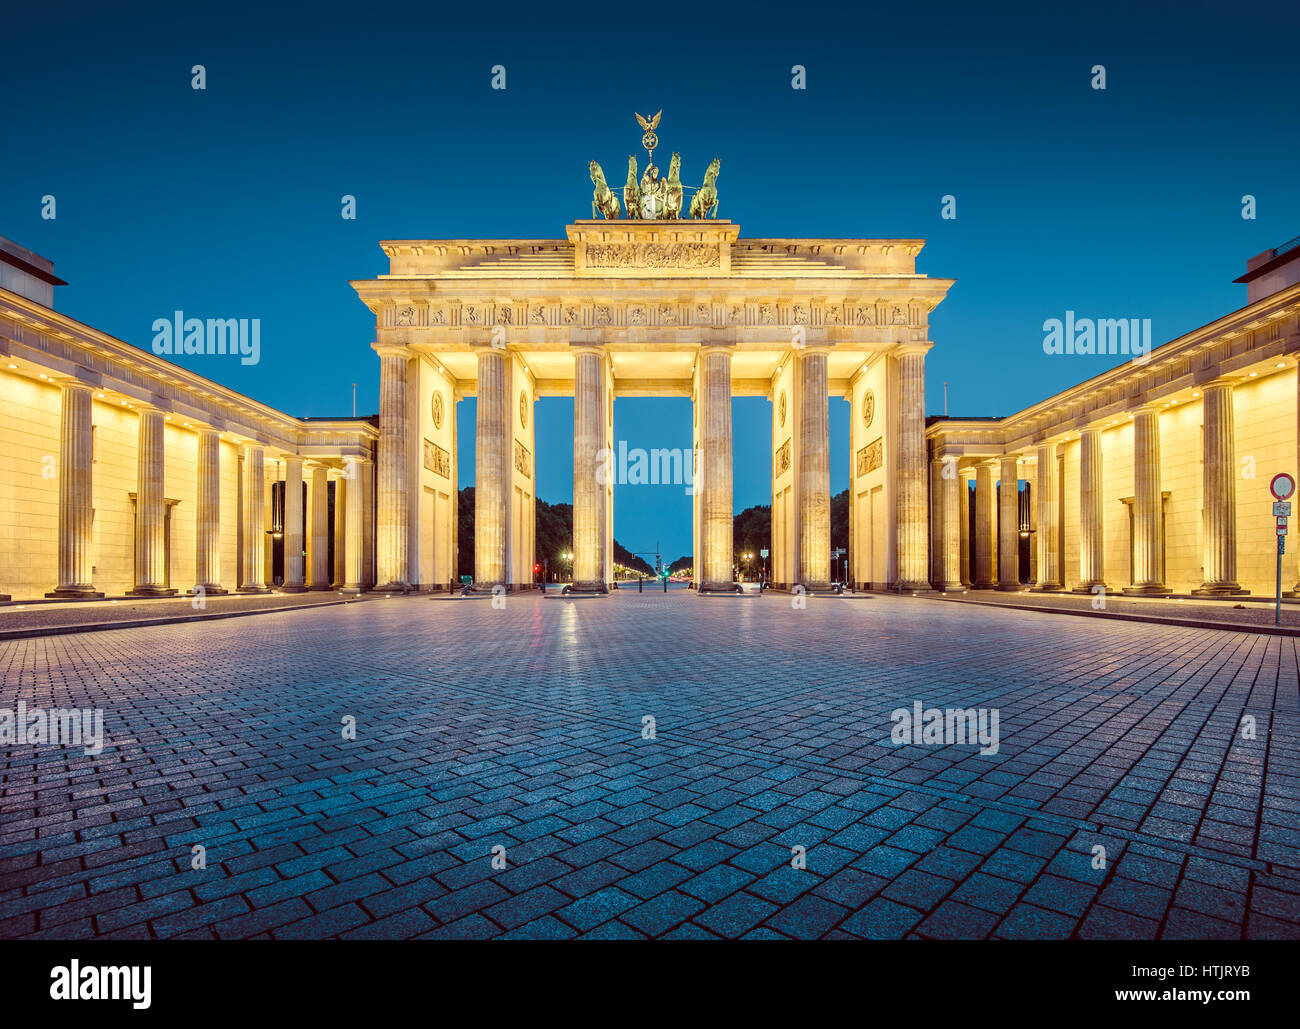 Vista panorámica de Brandenburger Tor (Puerta de Brandenburgo), uno de los hitos más conocidos y los símbolos nacionales de Alemania, en la penumbra, Berlín Foto de stock